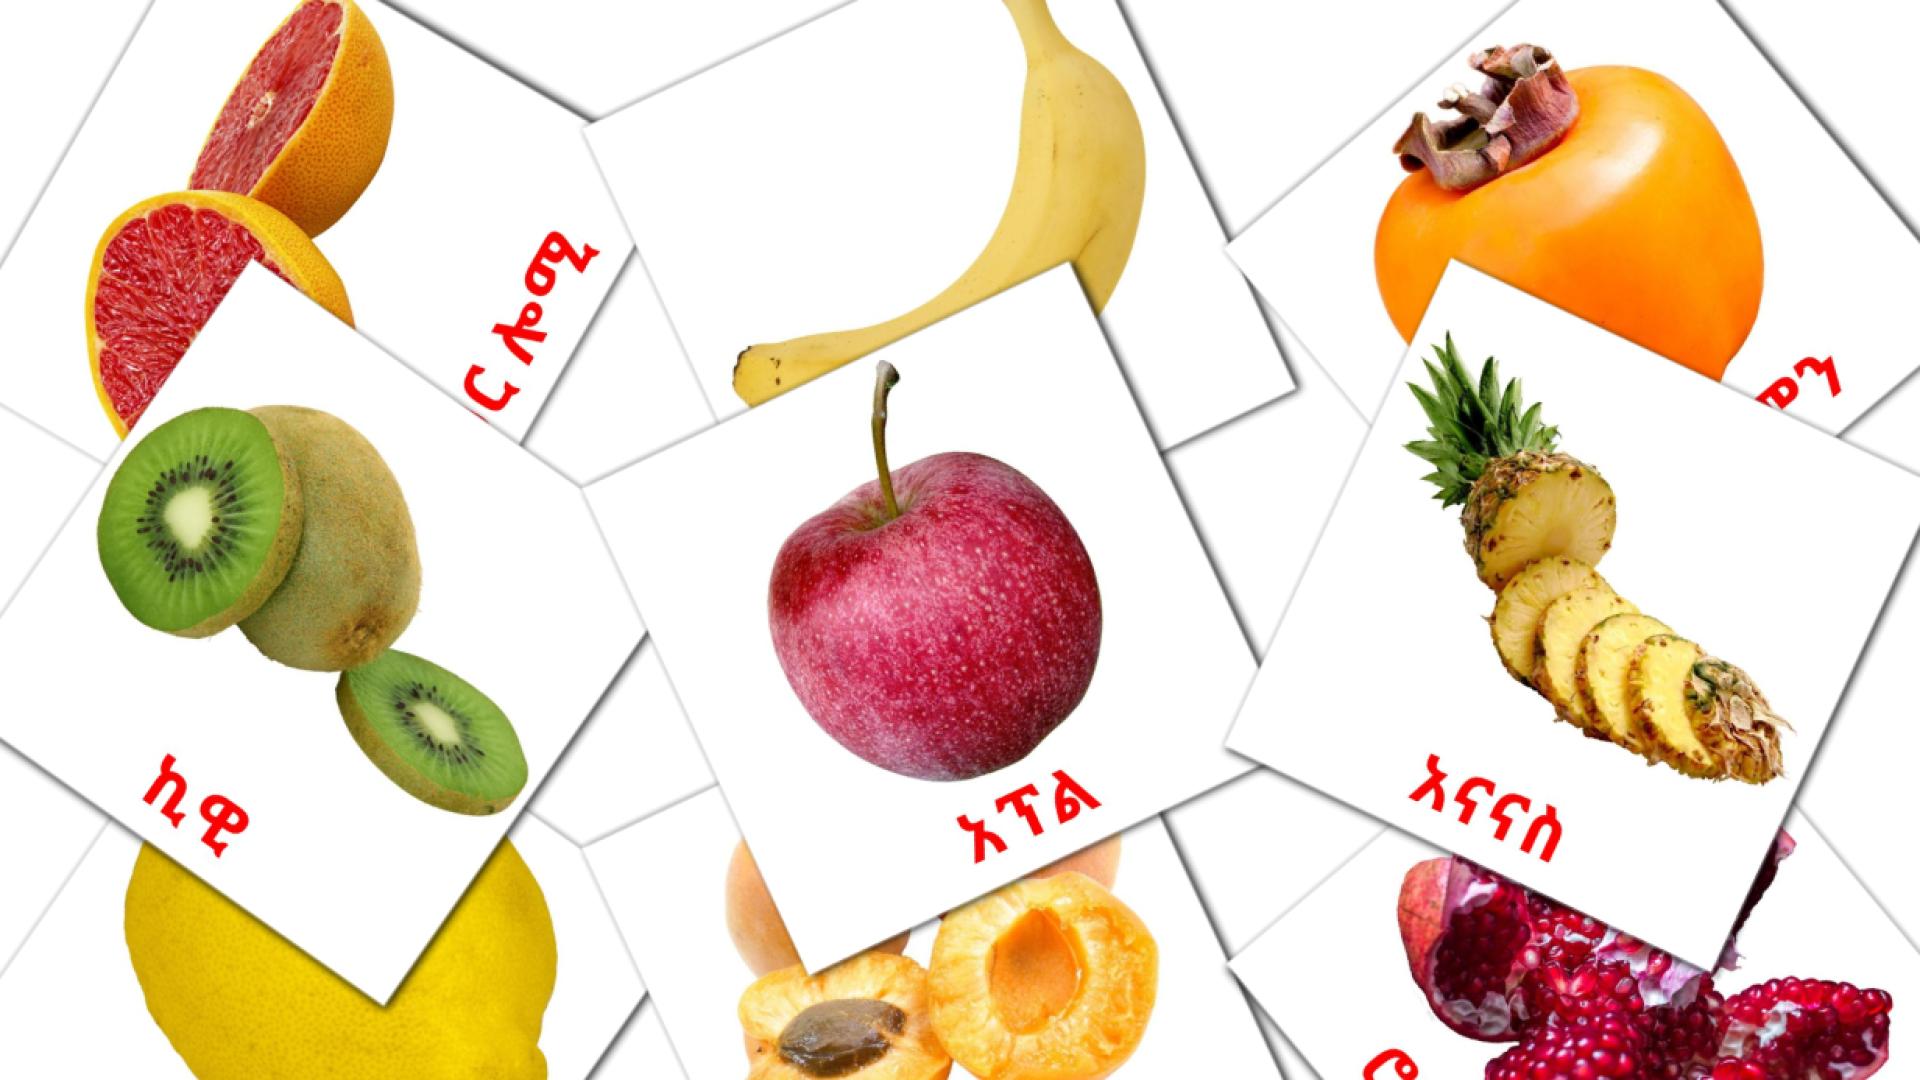 Fruits flashcards